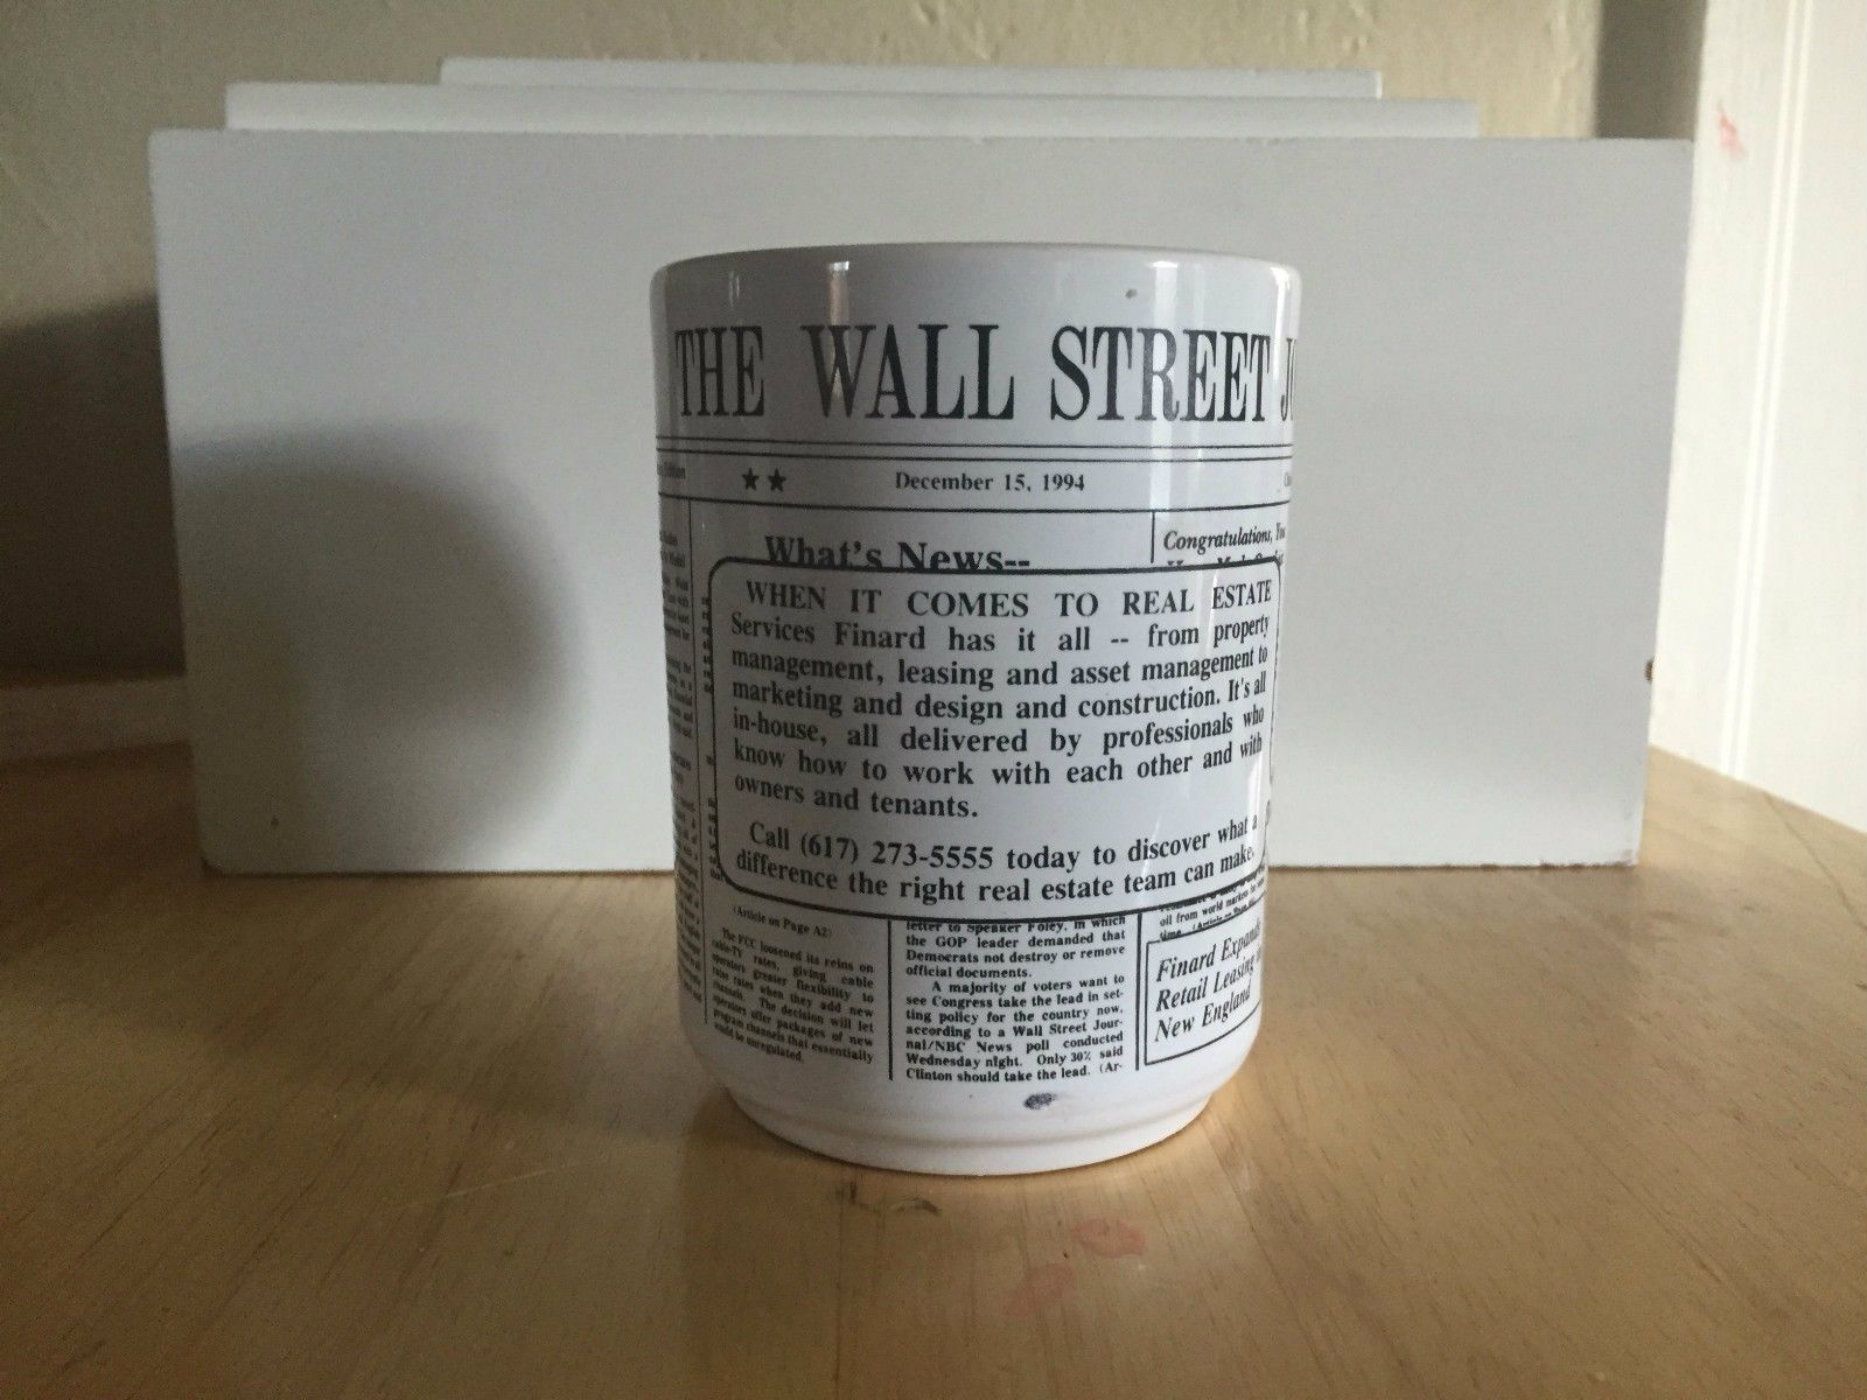 La monumental errada de 'The Wall Street Journal'